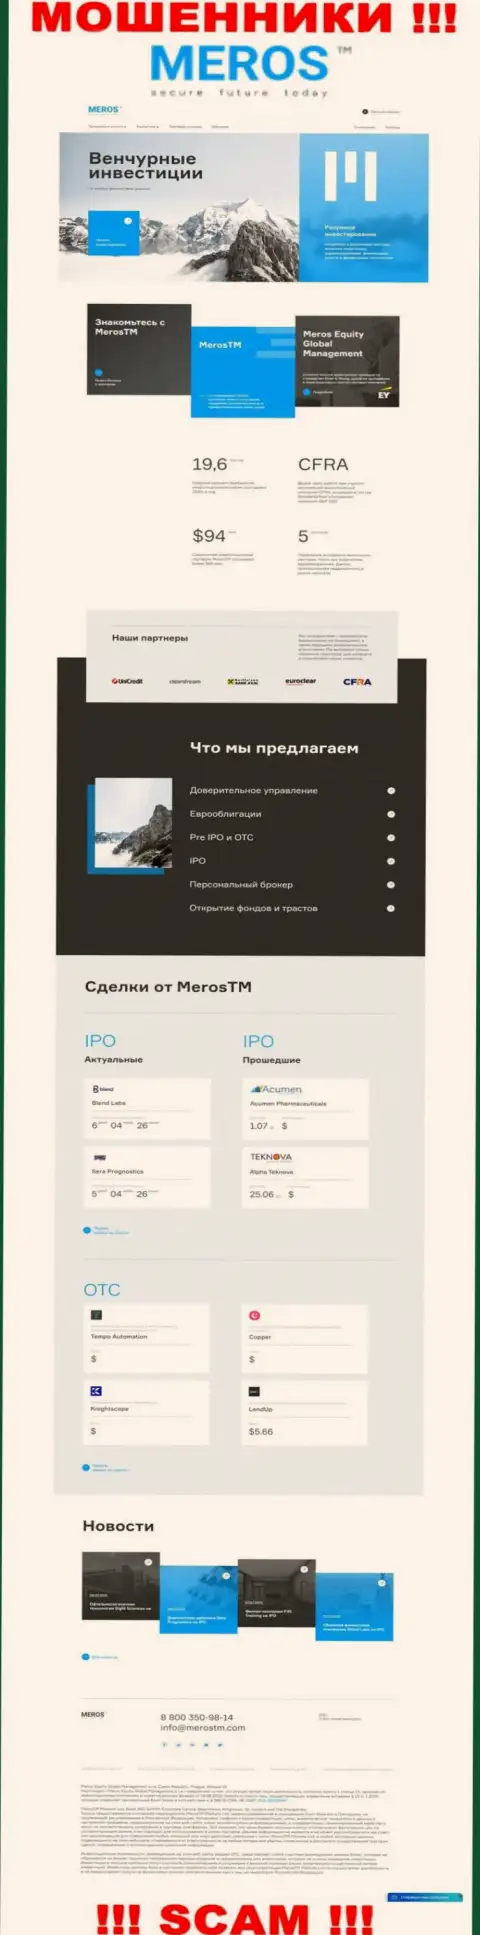 Обзор официального интернет-сервиса лохотронщиков Meros TM